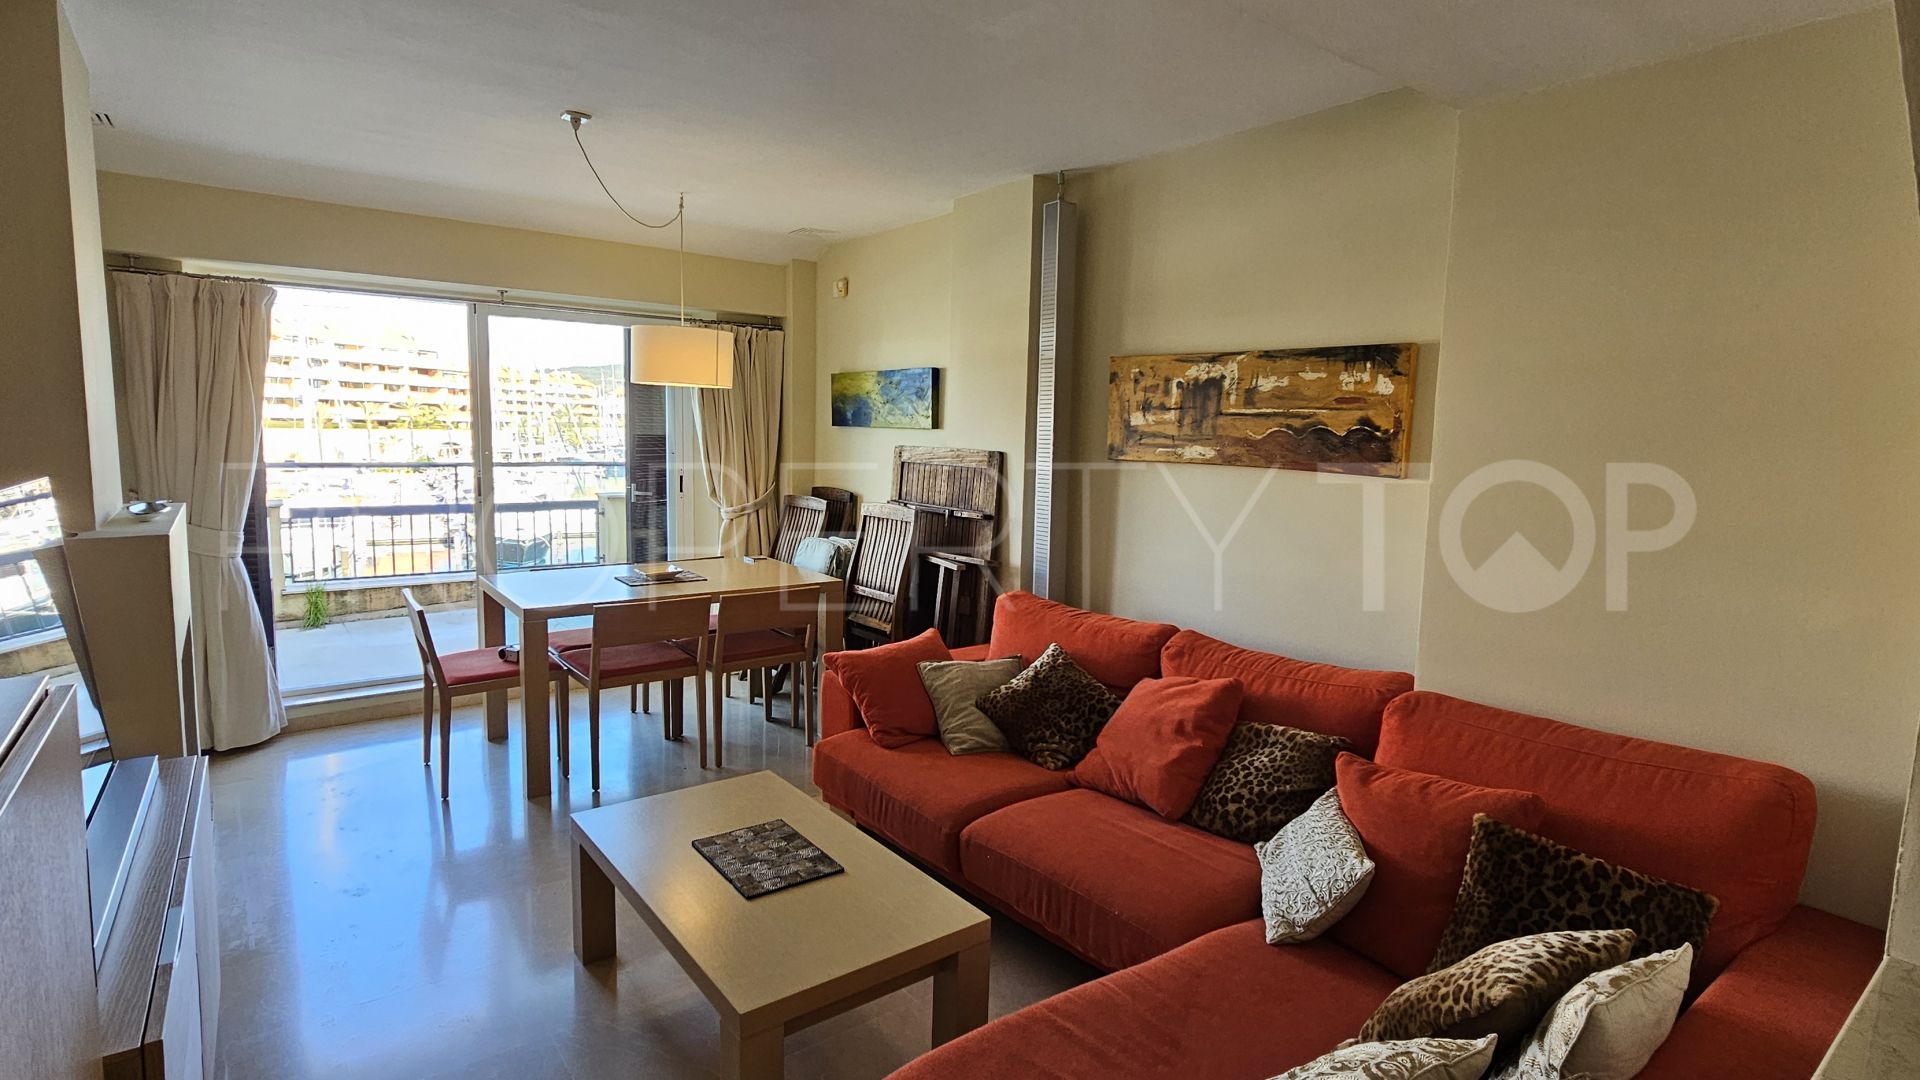 Comprar apartamento en Ribera del Candil